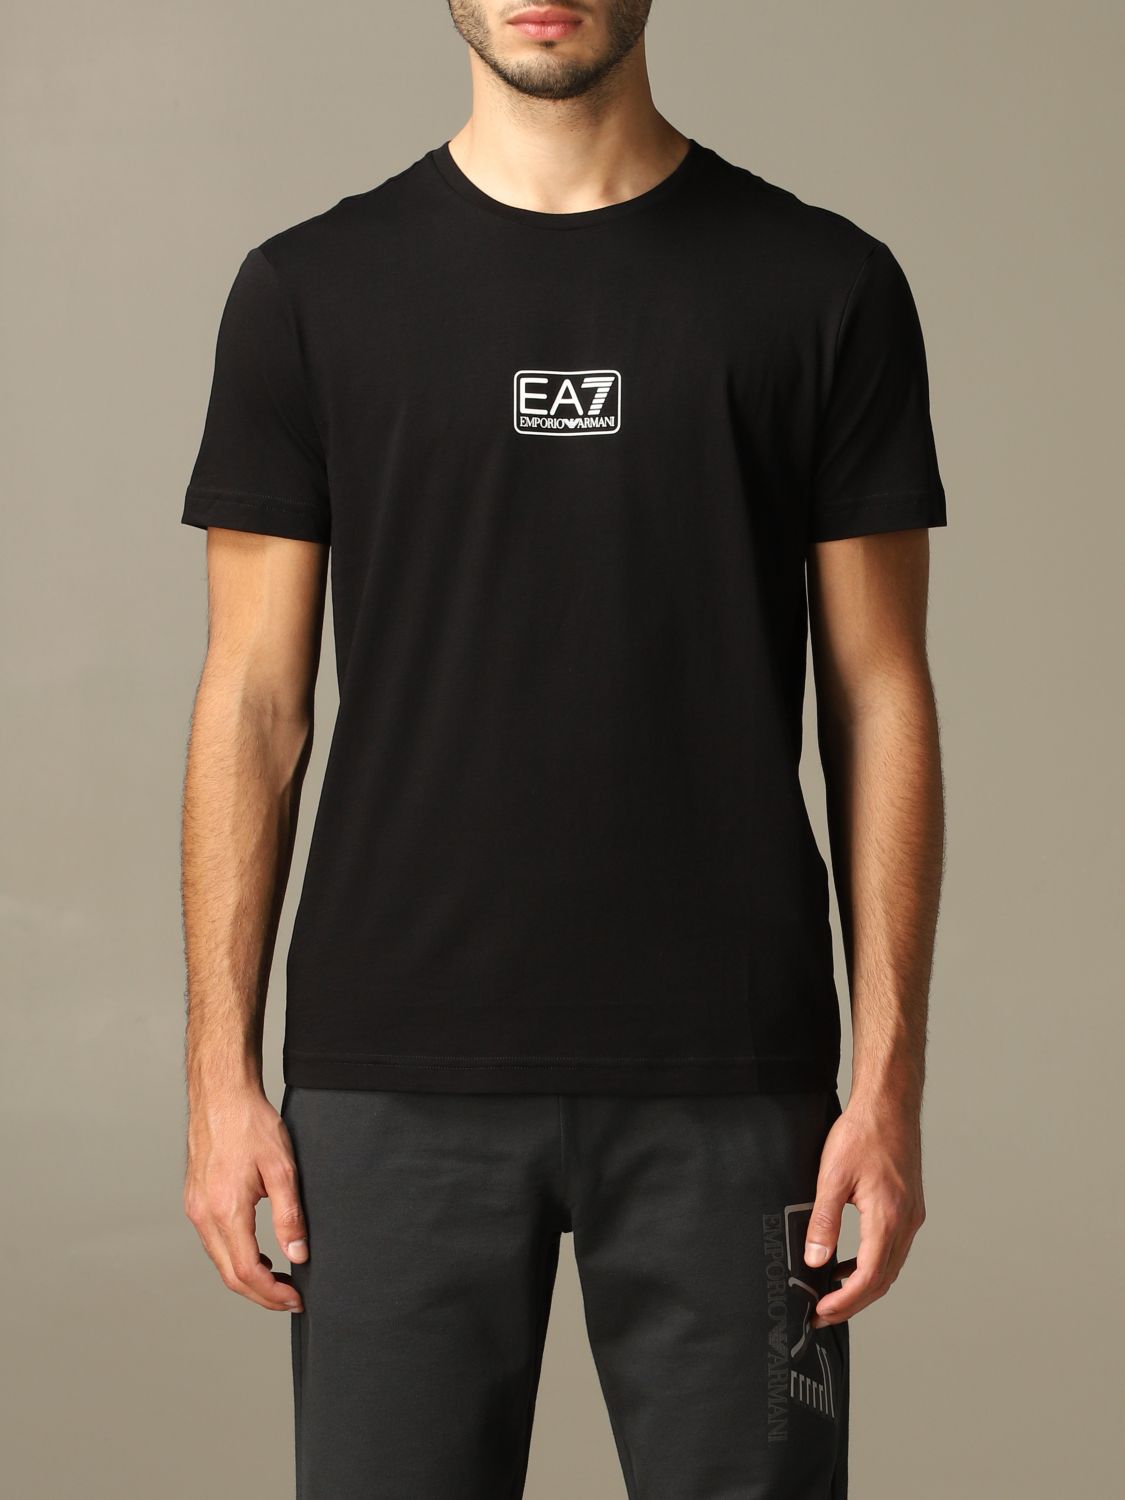 Ea7 Outlet: t-shirt for man - Black | Ea7 t-shirt 8NPT11 PJNQZ online ...